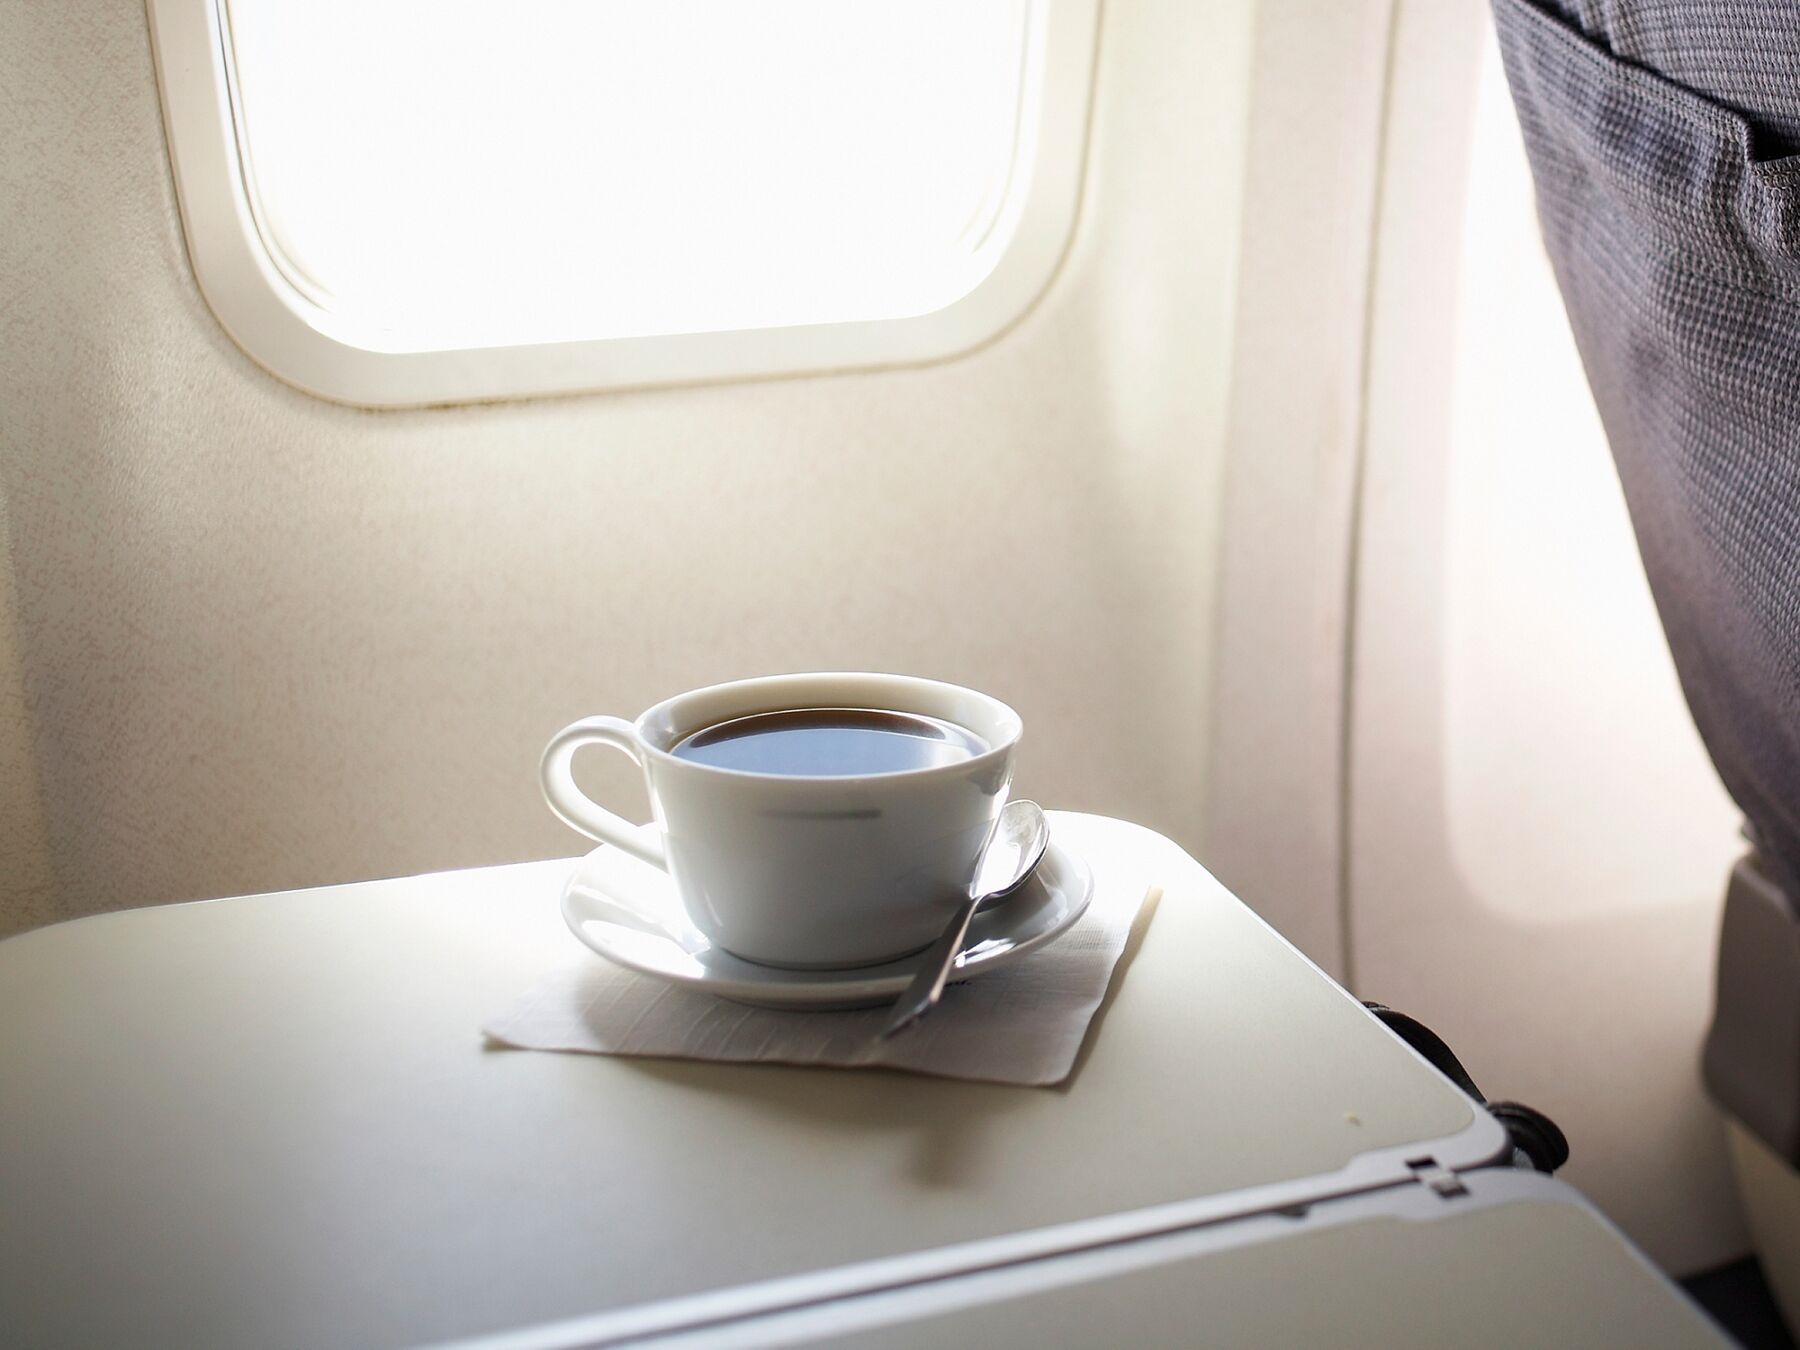 Vì sao không nên gọi trà và cà phê trên máy bay? Vấn đề nằm ở nguồn nước. (Ảnh: Getty Images)